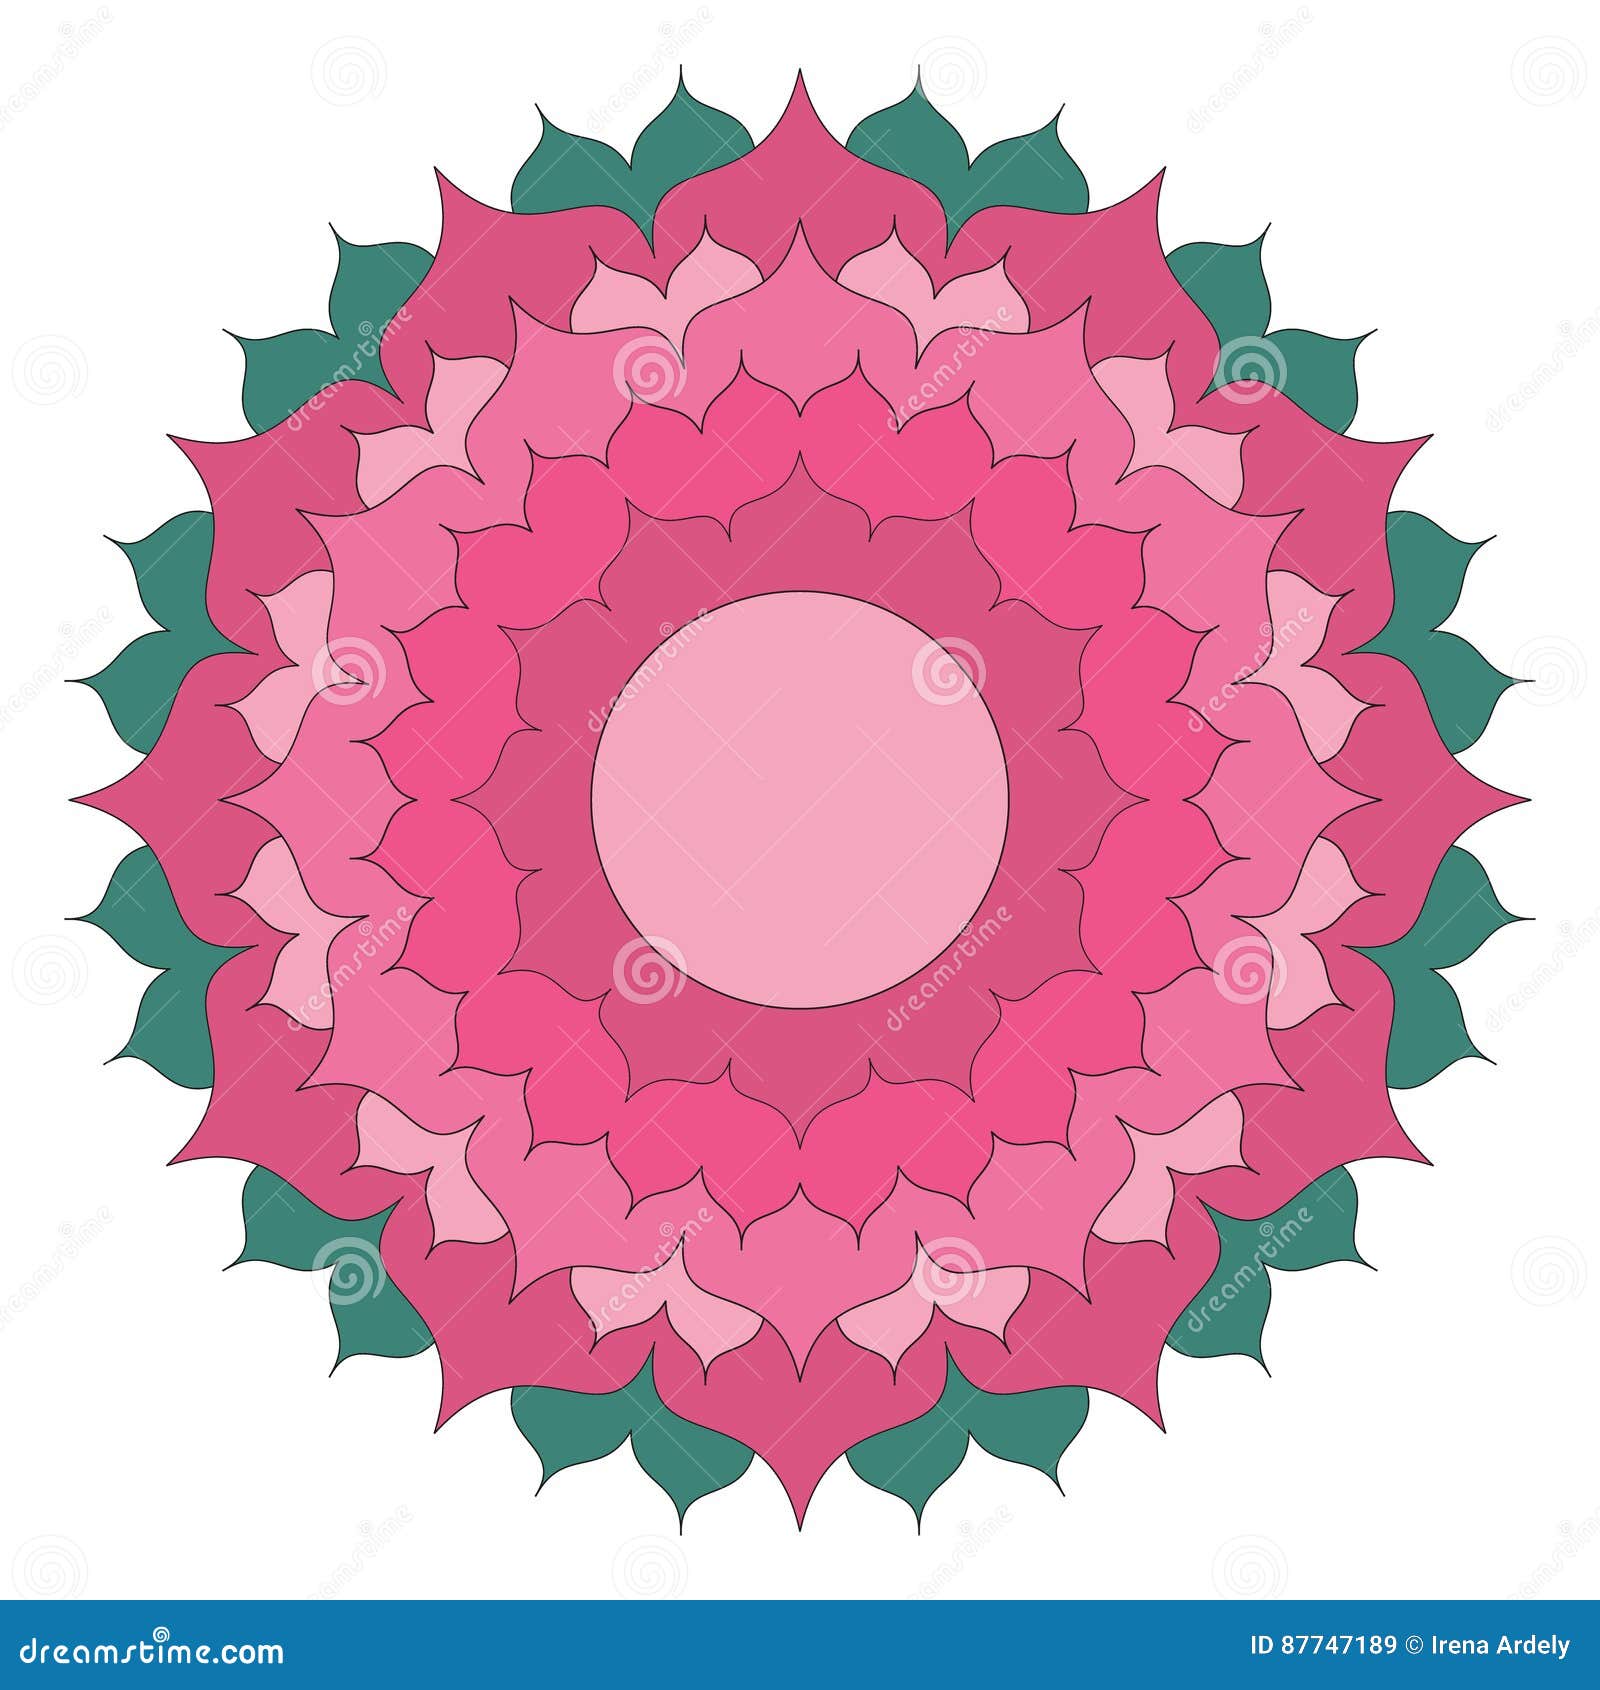 Download Vector Colored Simple Mandala Lotus Flower - Adult ...